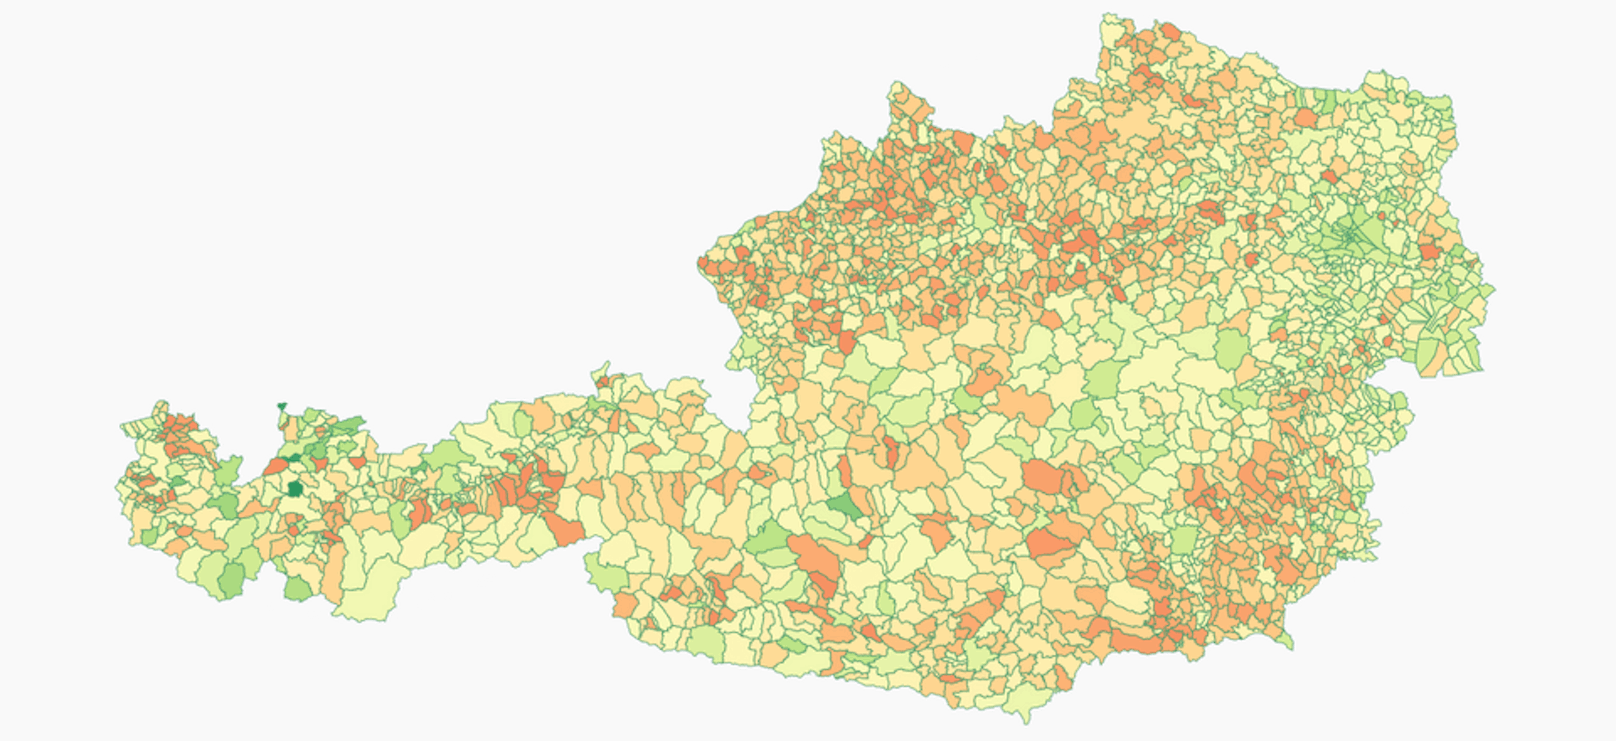 Die Daheimbleib-Karte: In grünen Regionen bleiben mehr Menschen als vor dem ersten Lockdown daheim, in orangen und roten nicht.